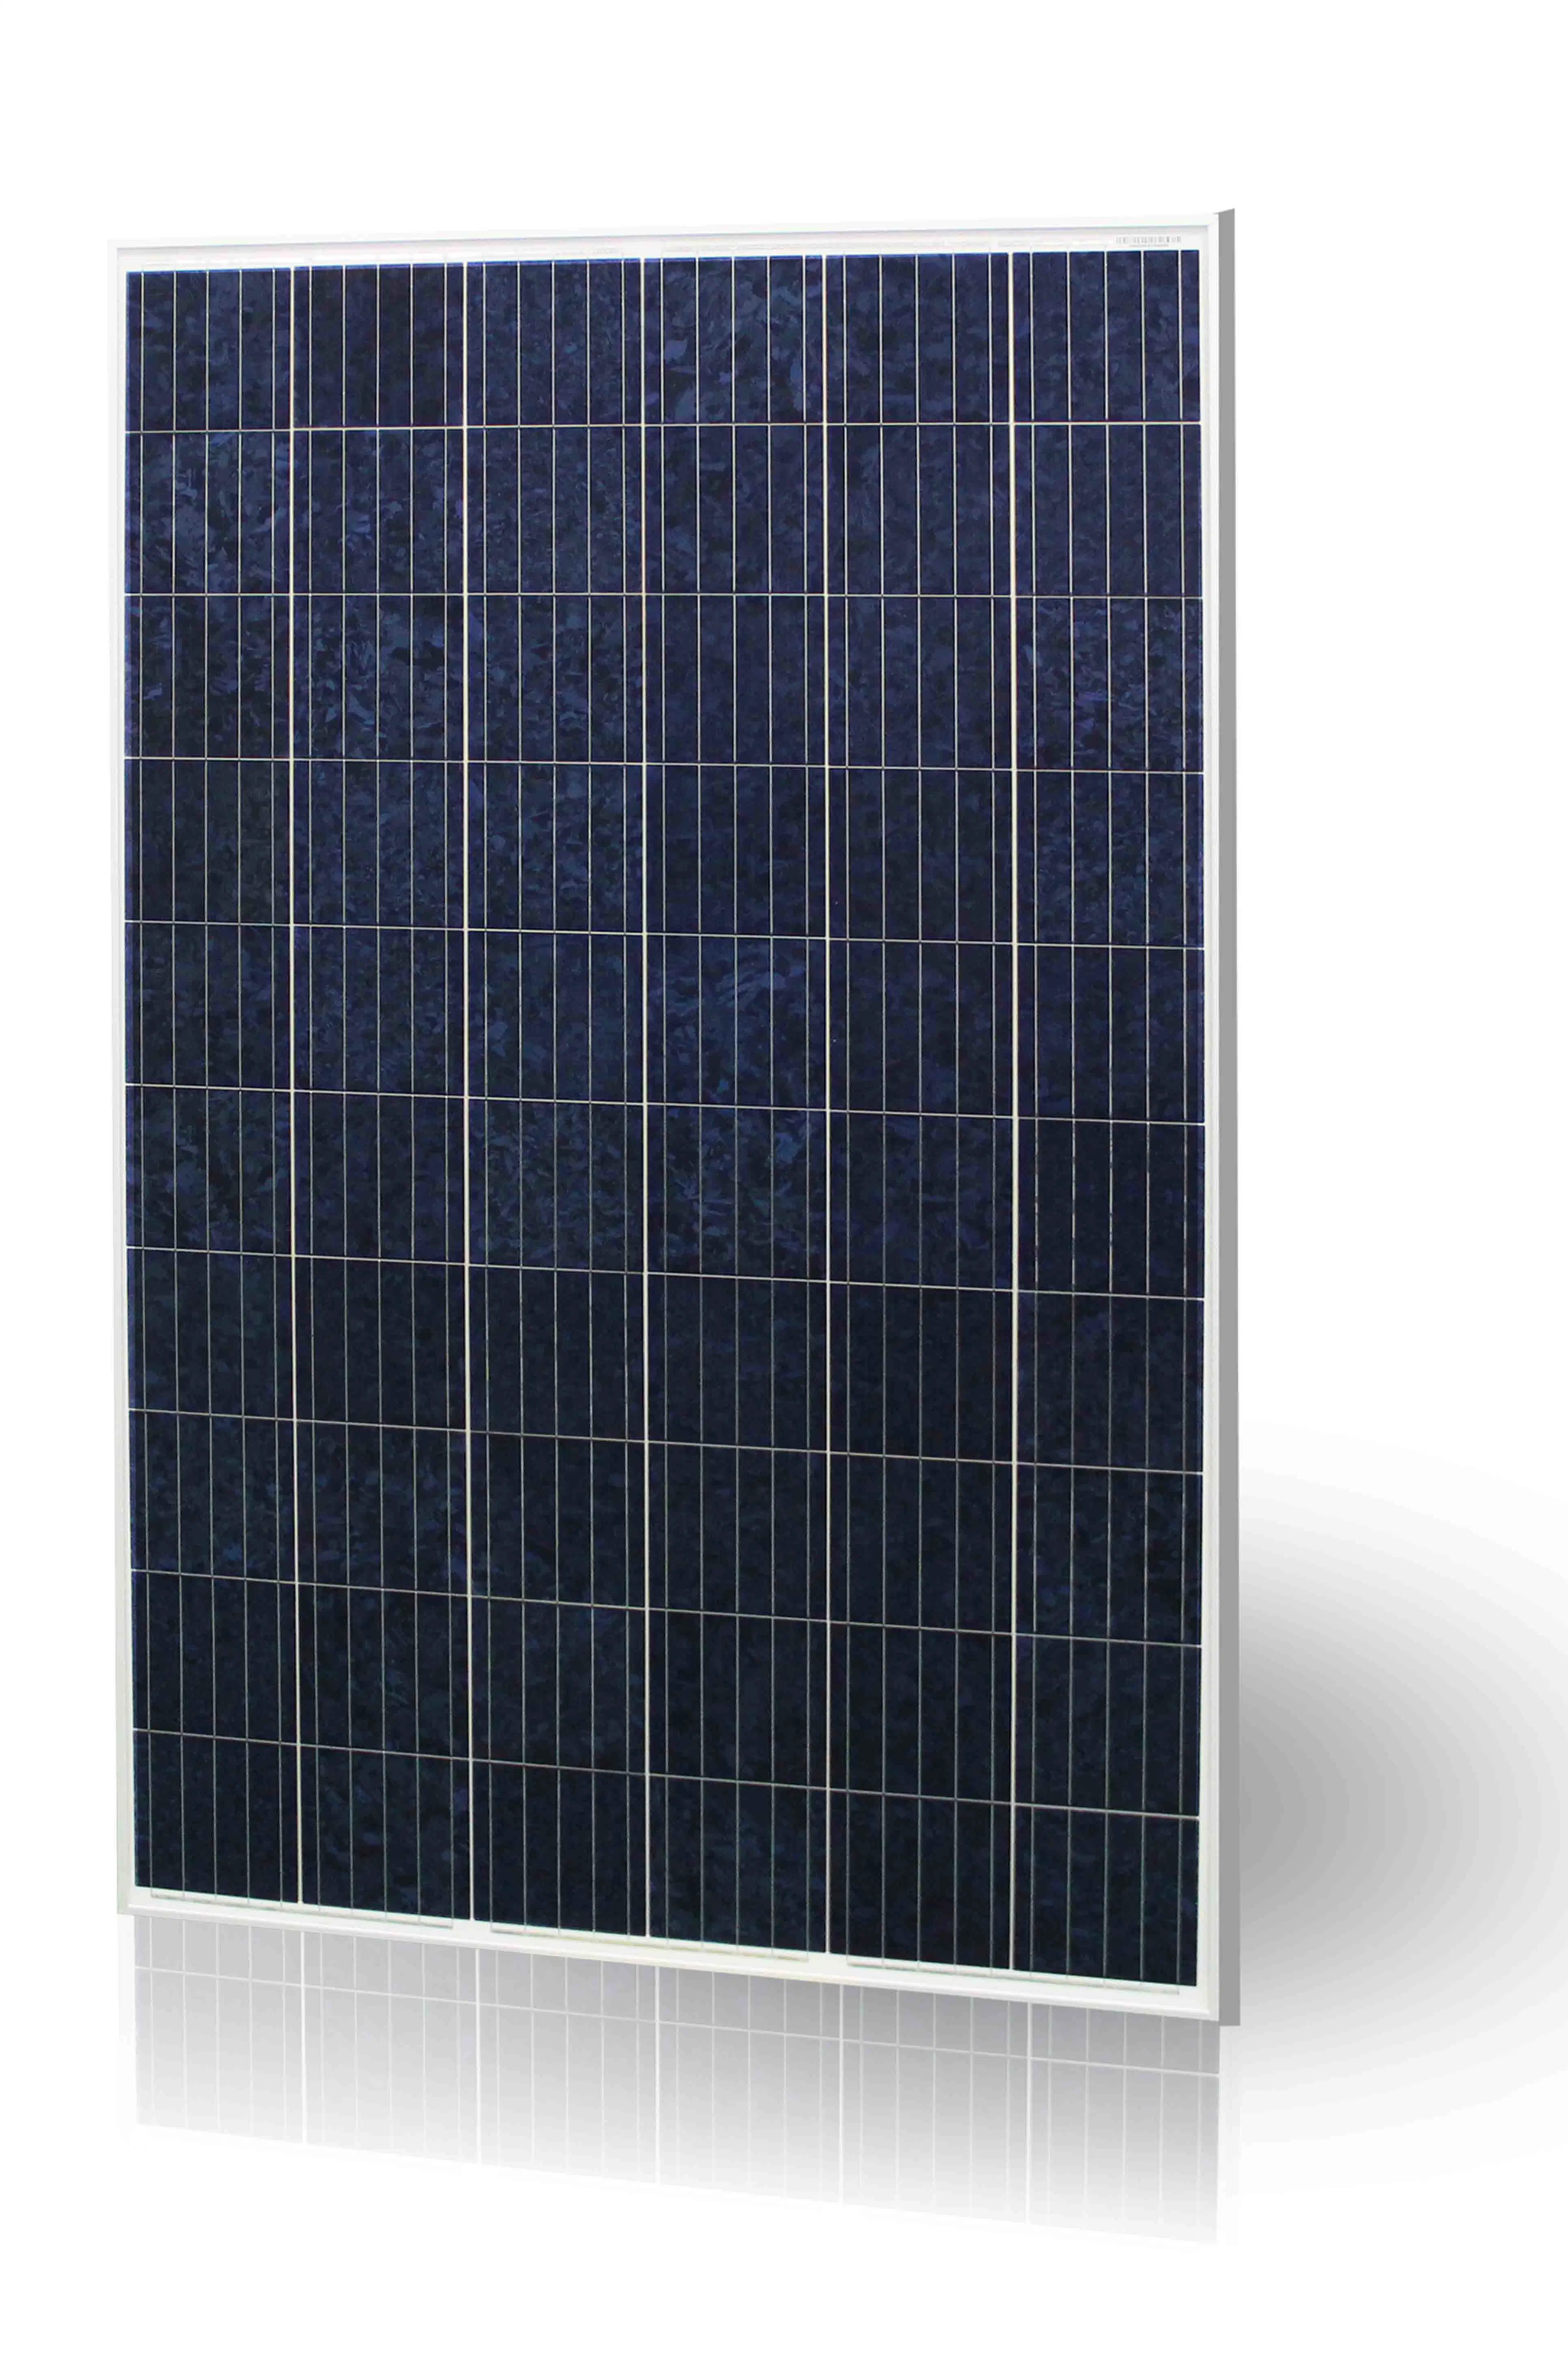 150kW rejilla de energía solar